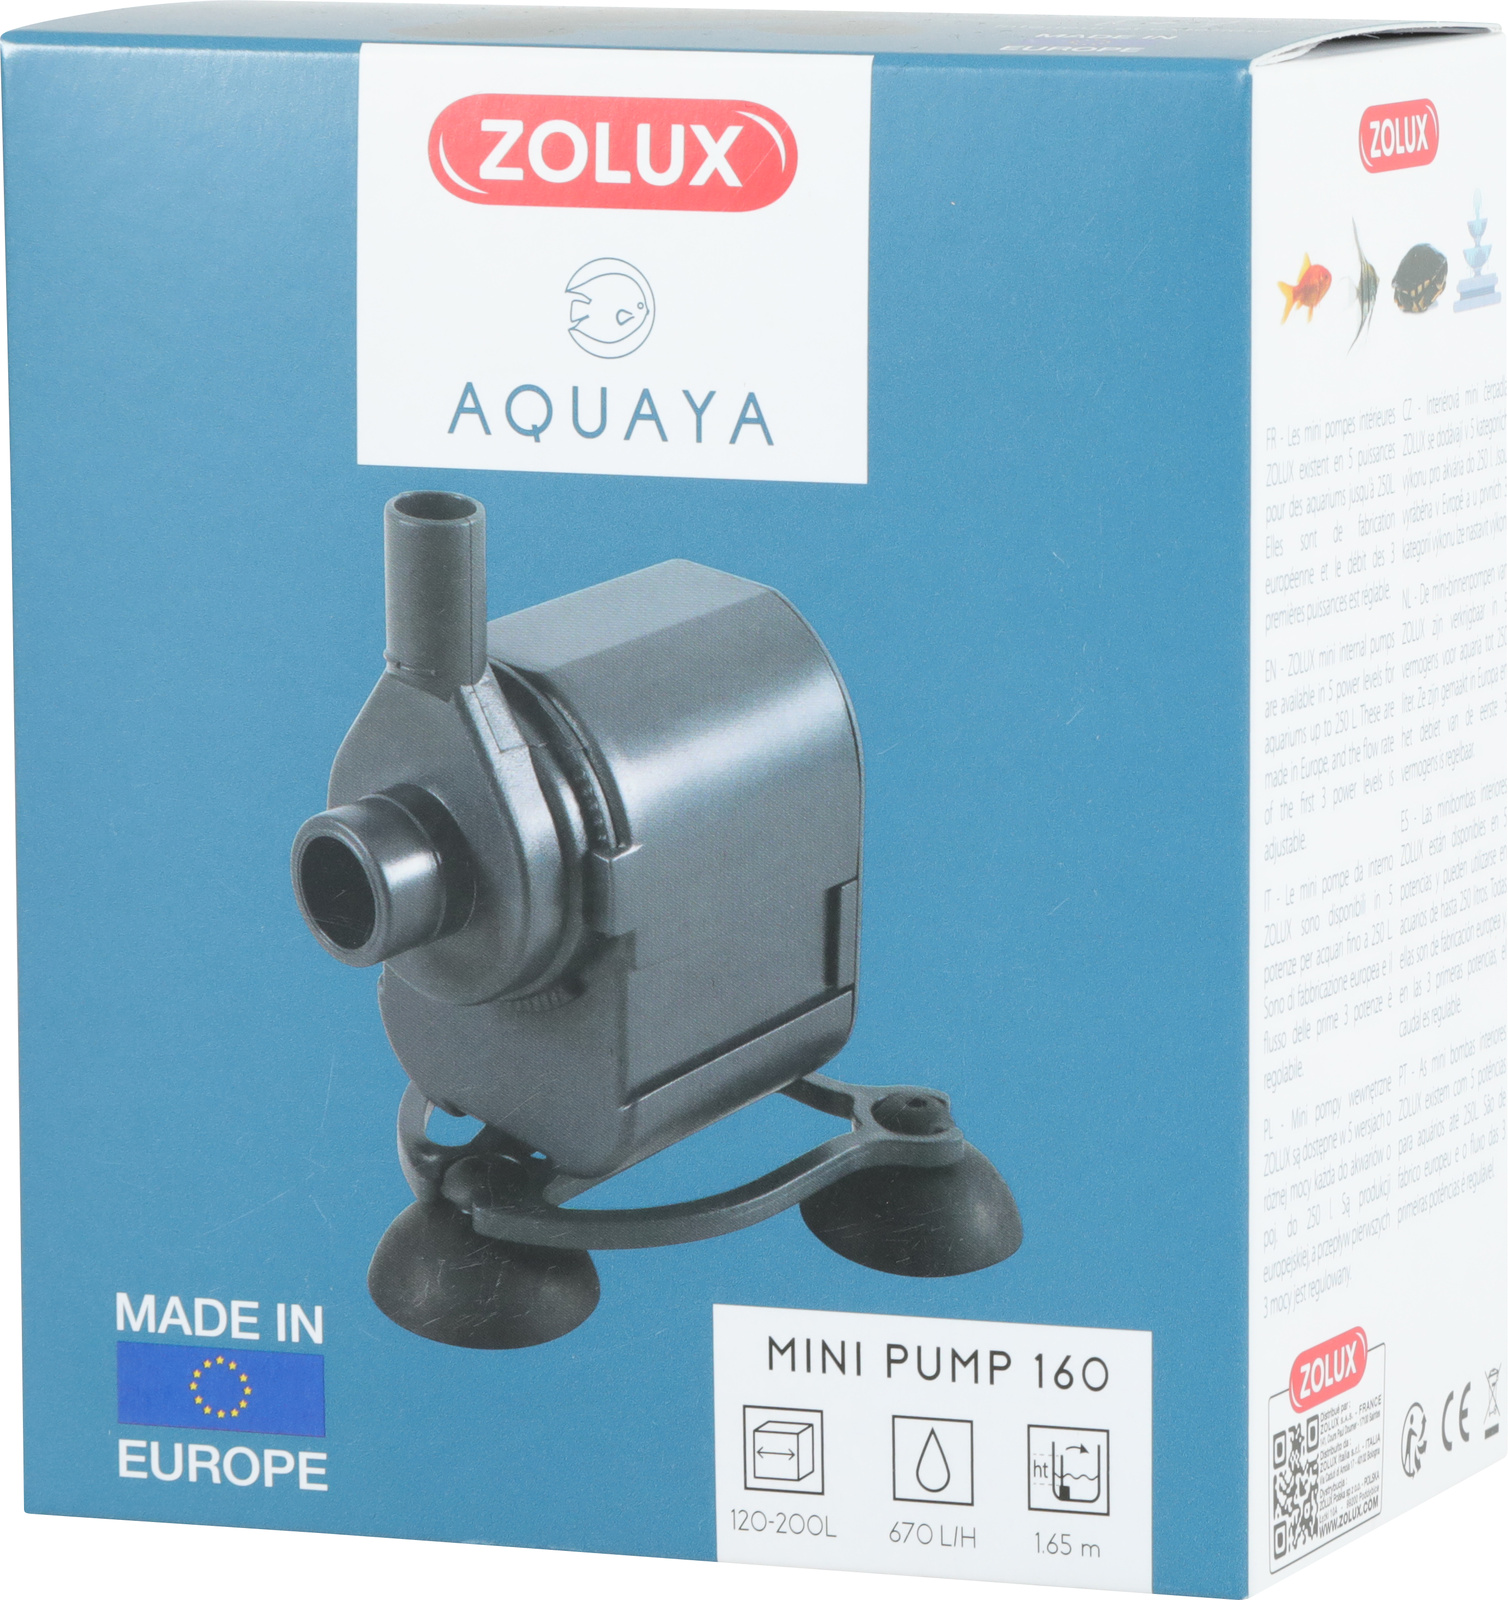 ZOLUX Aquaya Mini Pump 160 pompe avec débit fixe de 670 L/h pour aquarium de 120 à 200 L